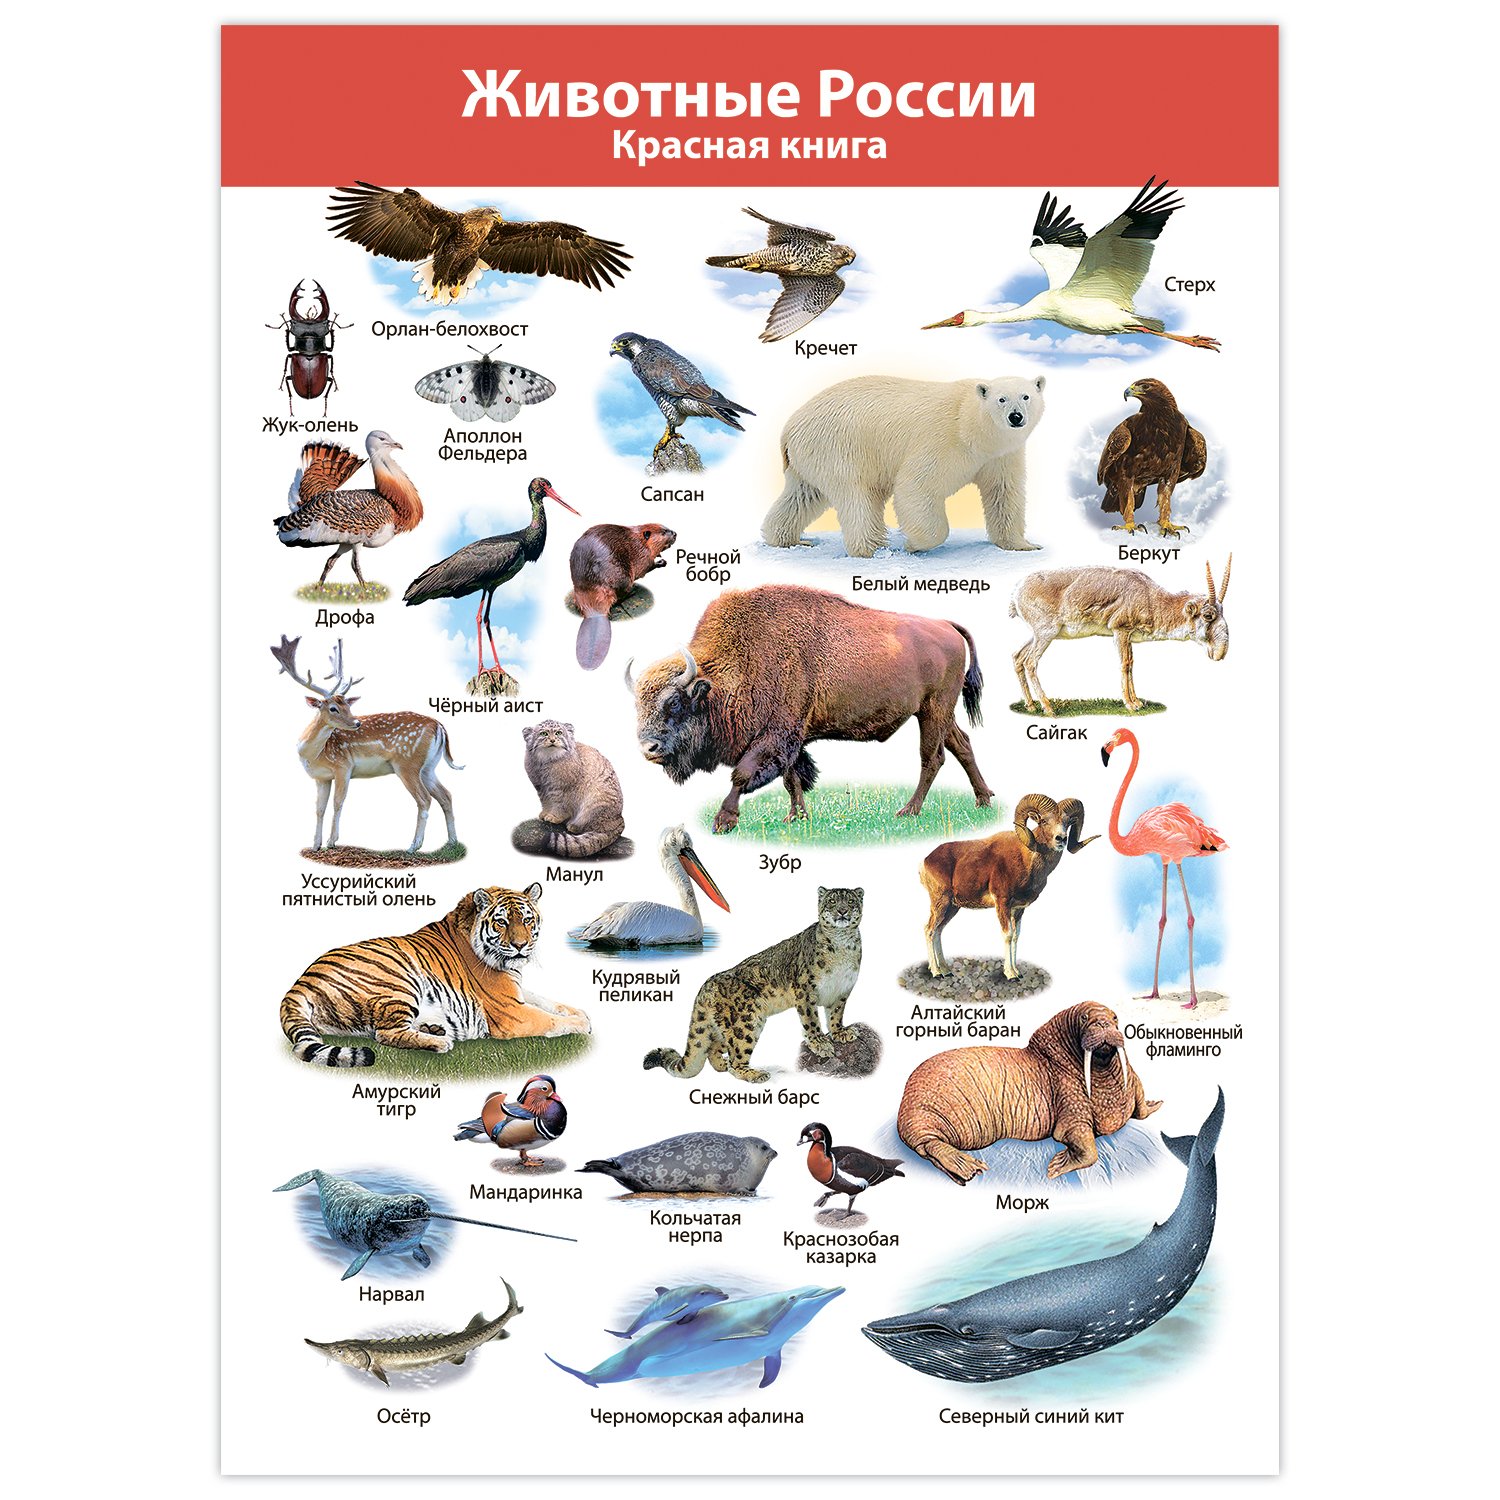 Какие животные встречаются в северной америке. Плакат. Животные. Животные Северной Америки. Плакат с животными. Животные севера плакат.